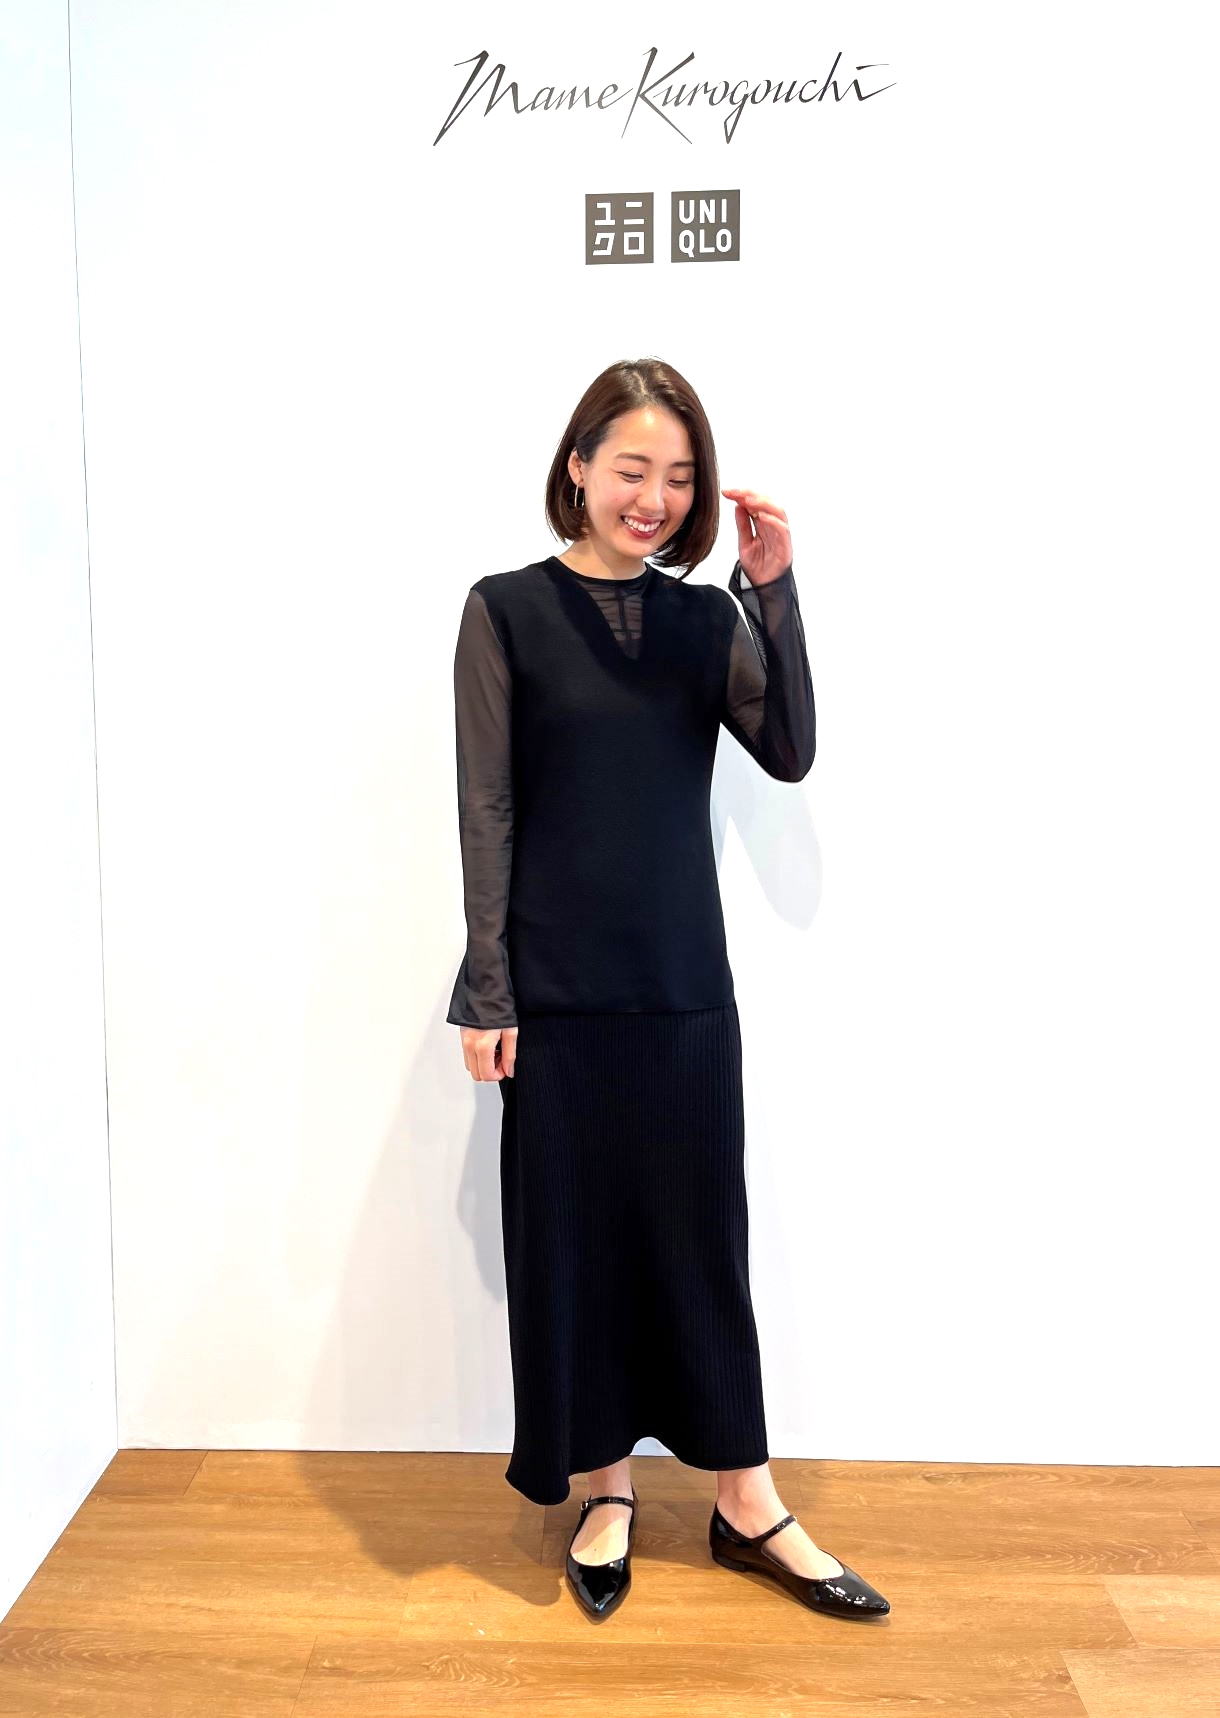 ユニクロ×マメクロゴウチ（UNIQLO and Mame Kurogouchi）のシアークルーネックTシャツ×3D リブバックスリットスカートのオススメコーデ。